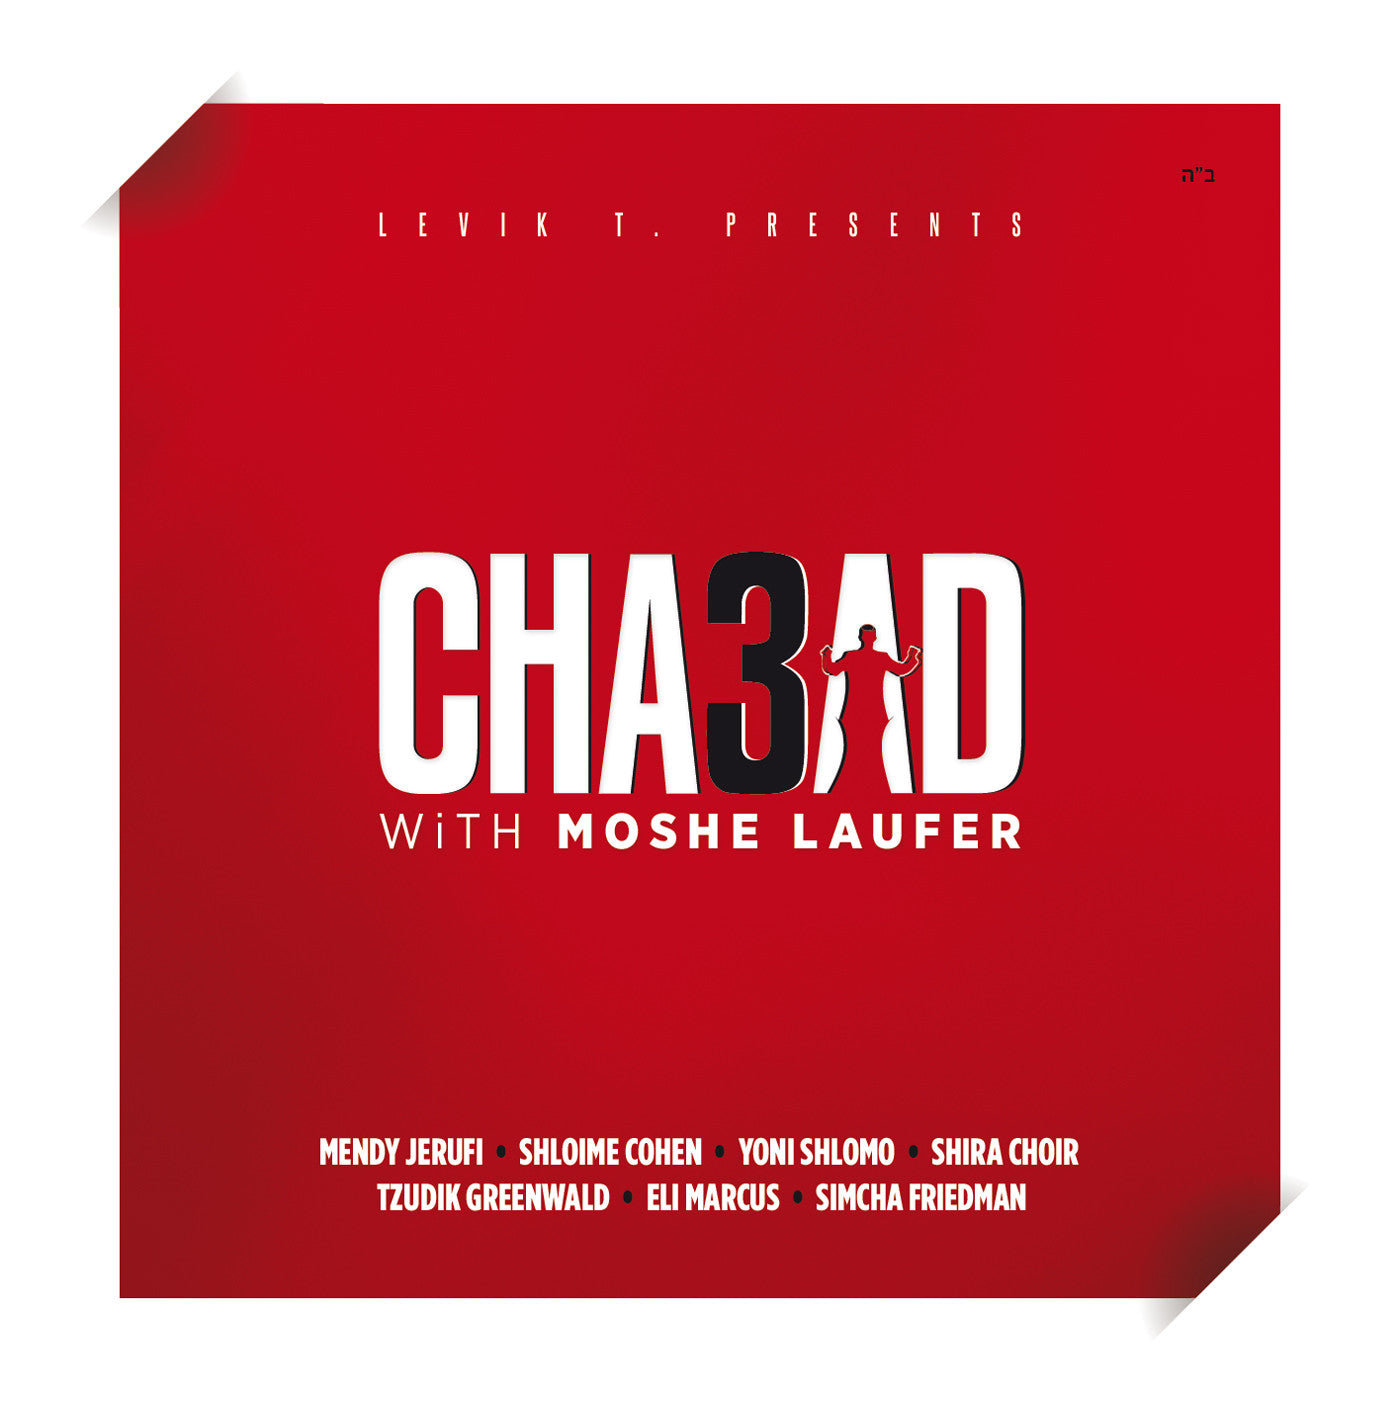 Moshe Laufer - Chabad 3